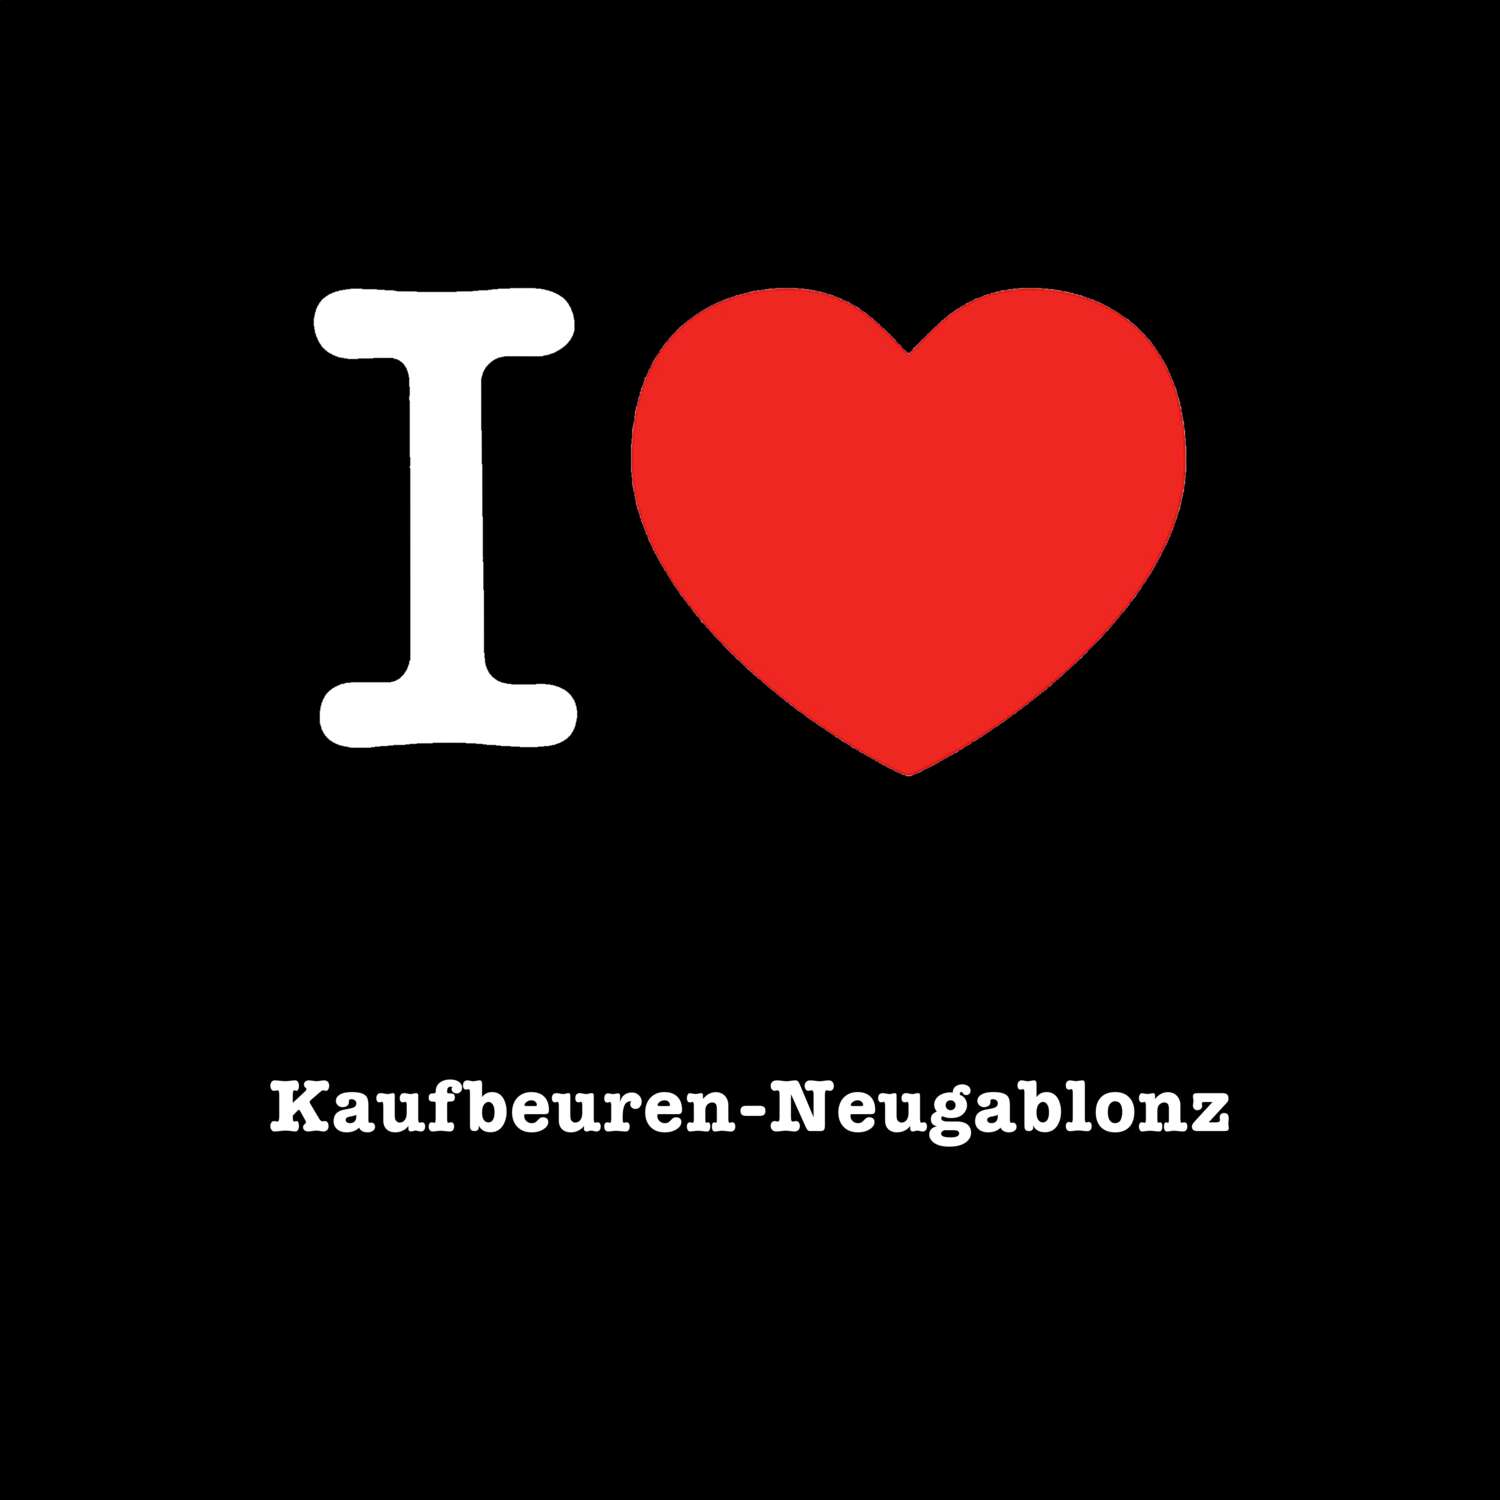 Kaufbeuren-Neugablonz T-Shirt »I love«